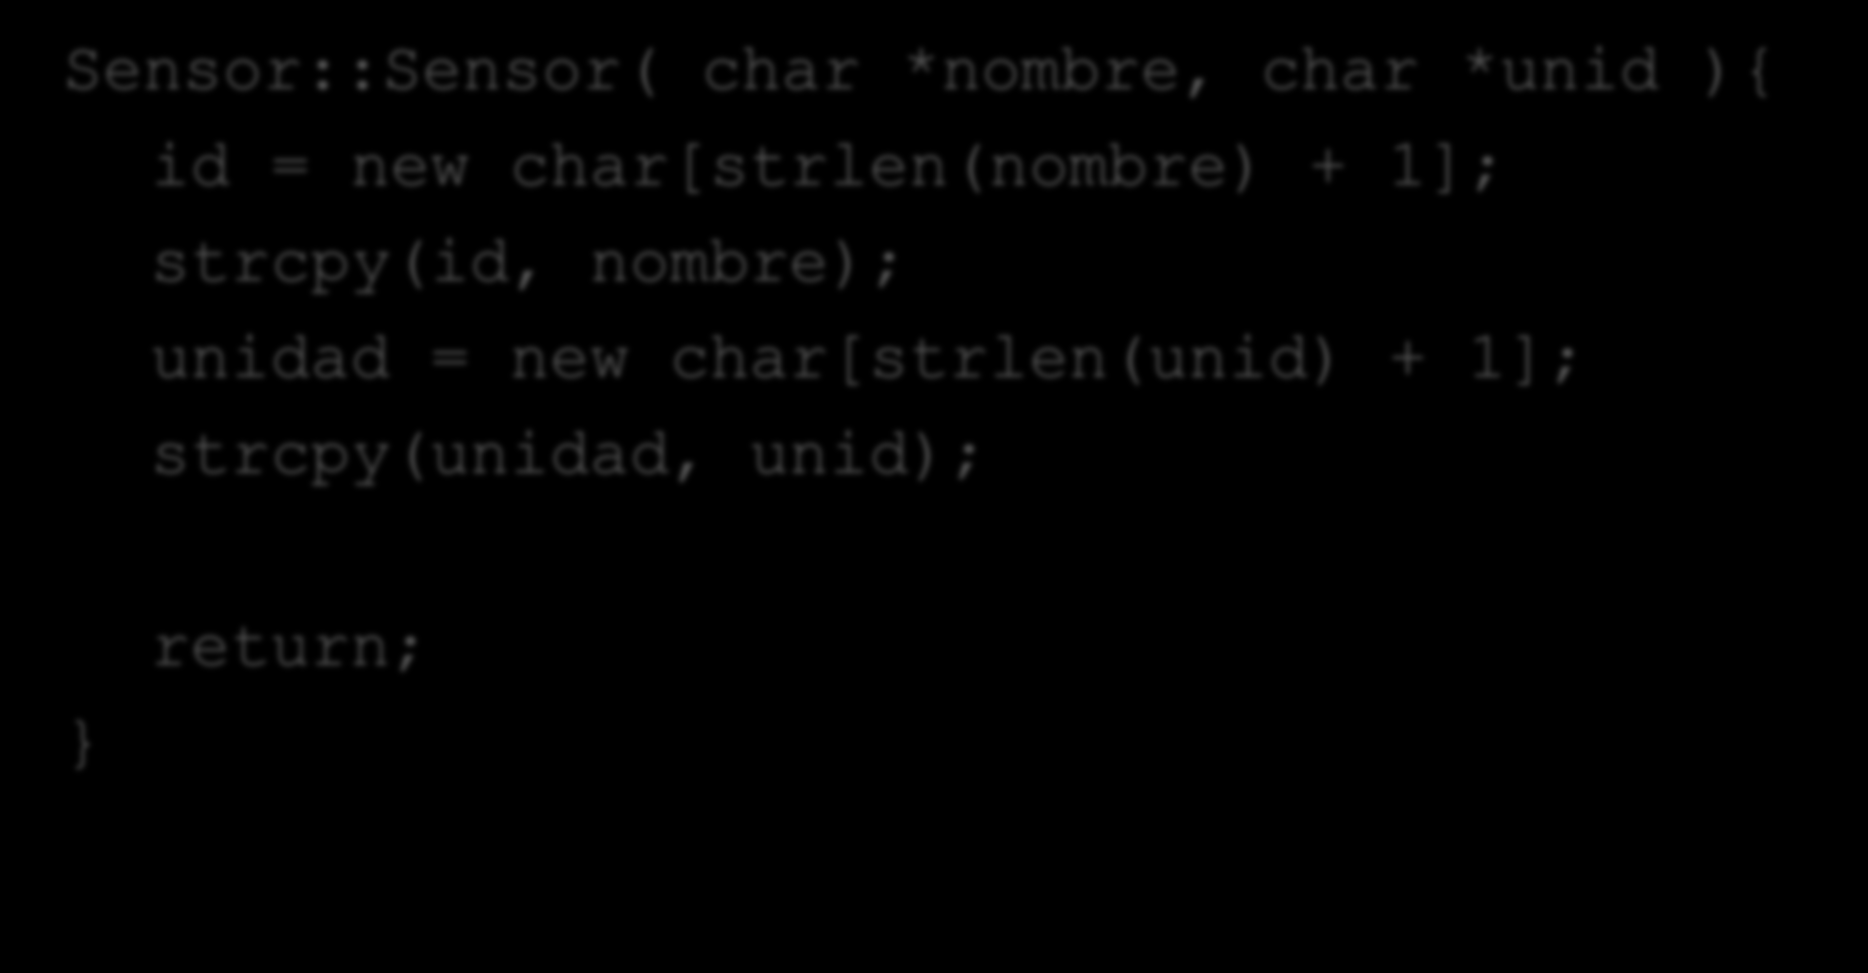 Constructores Sensor::Sensor( char *nombre, char *unid ){ id = new char[strlen(nombre) +